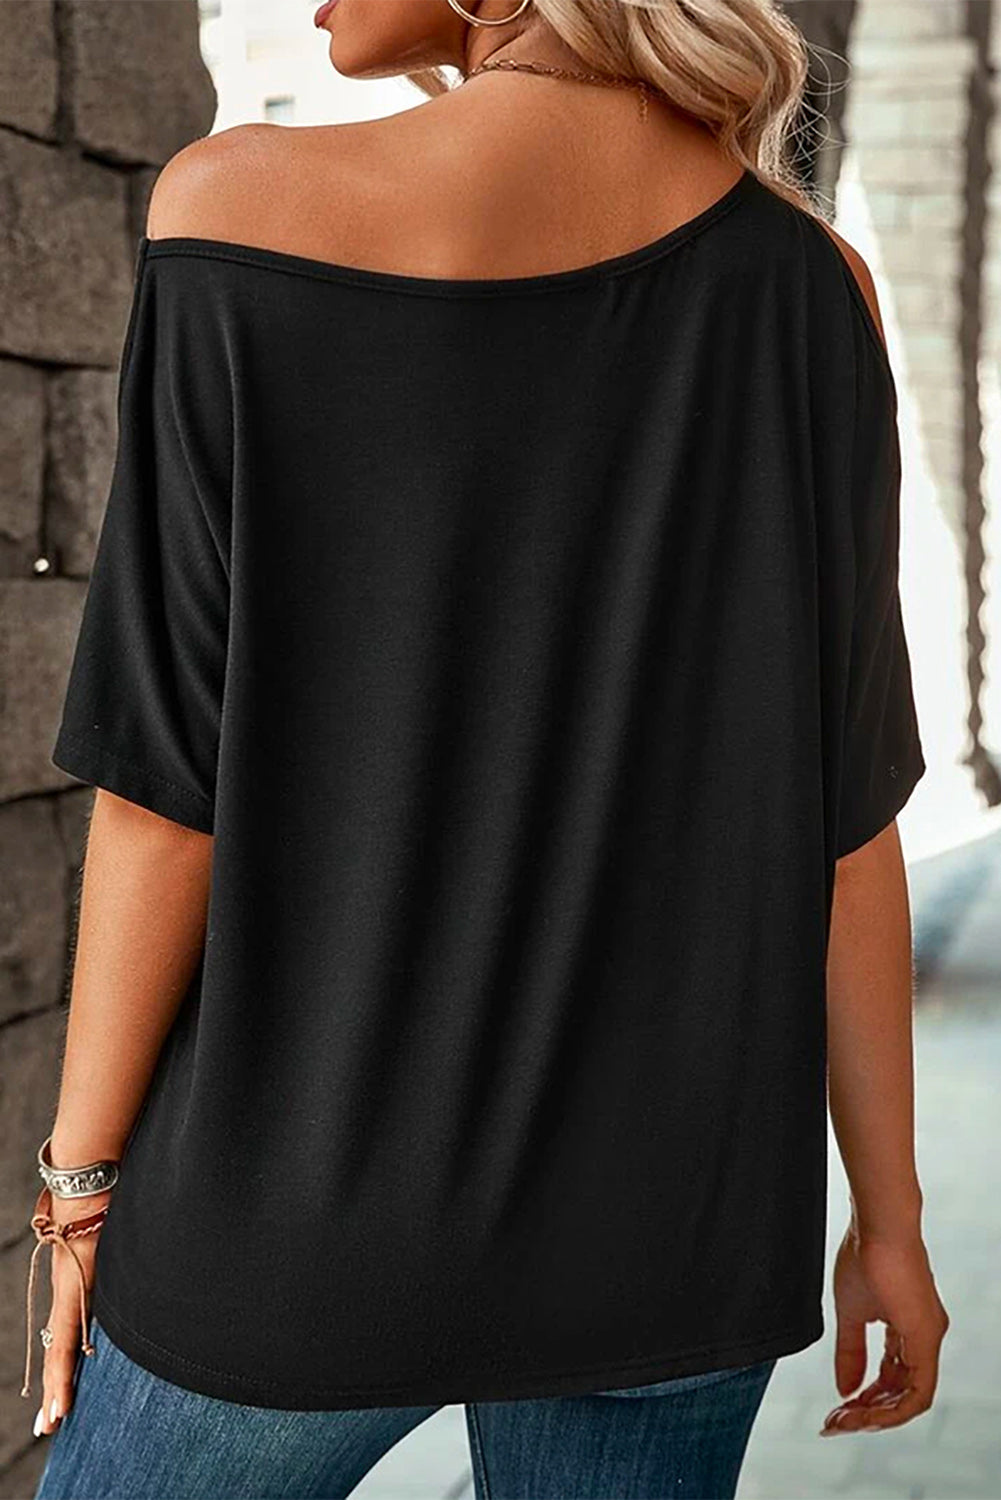 Schwarzes, einfarbiges, lockeres, lässiges T-Shirt mit asymmetrischem Ausschnitt